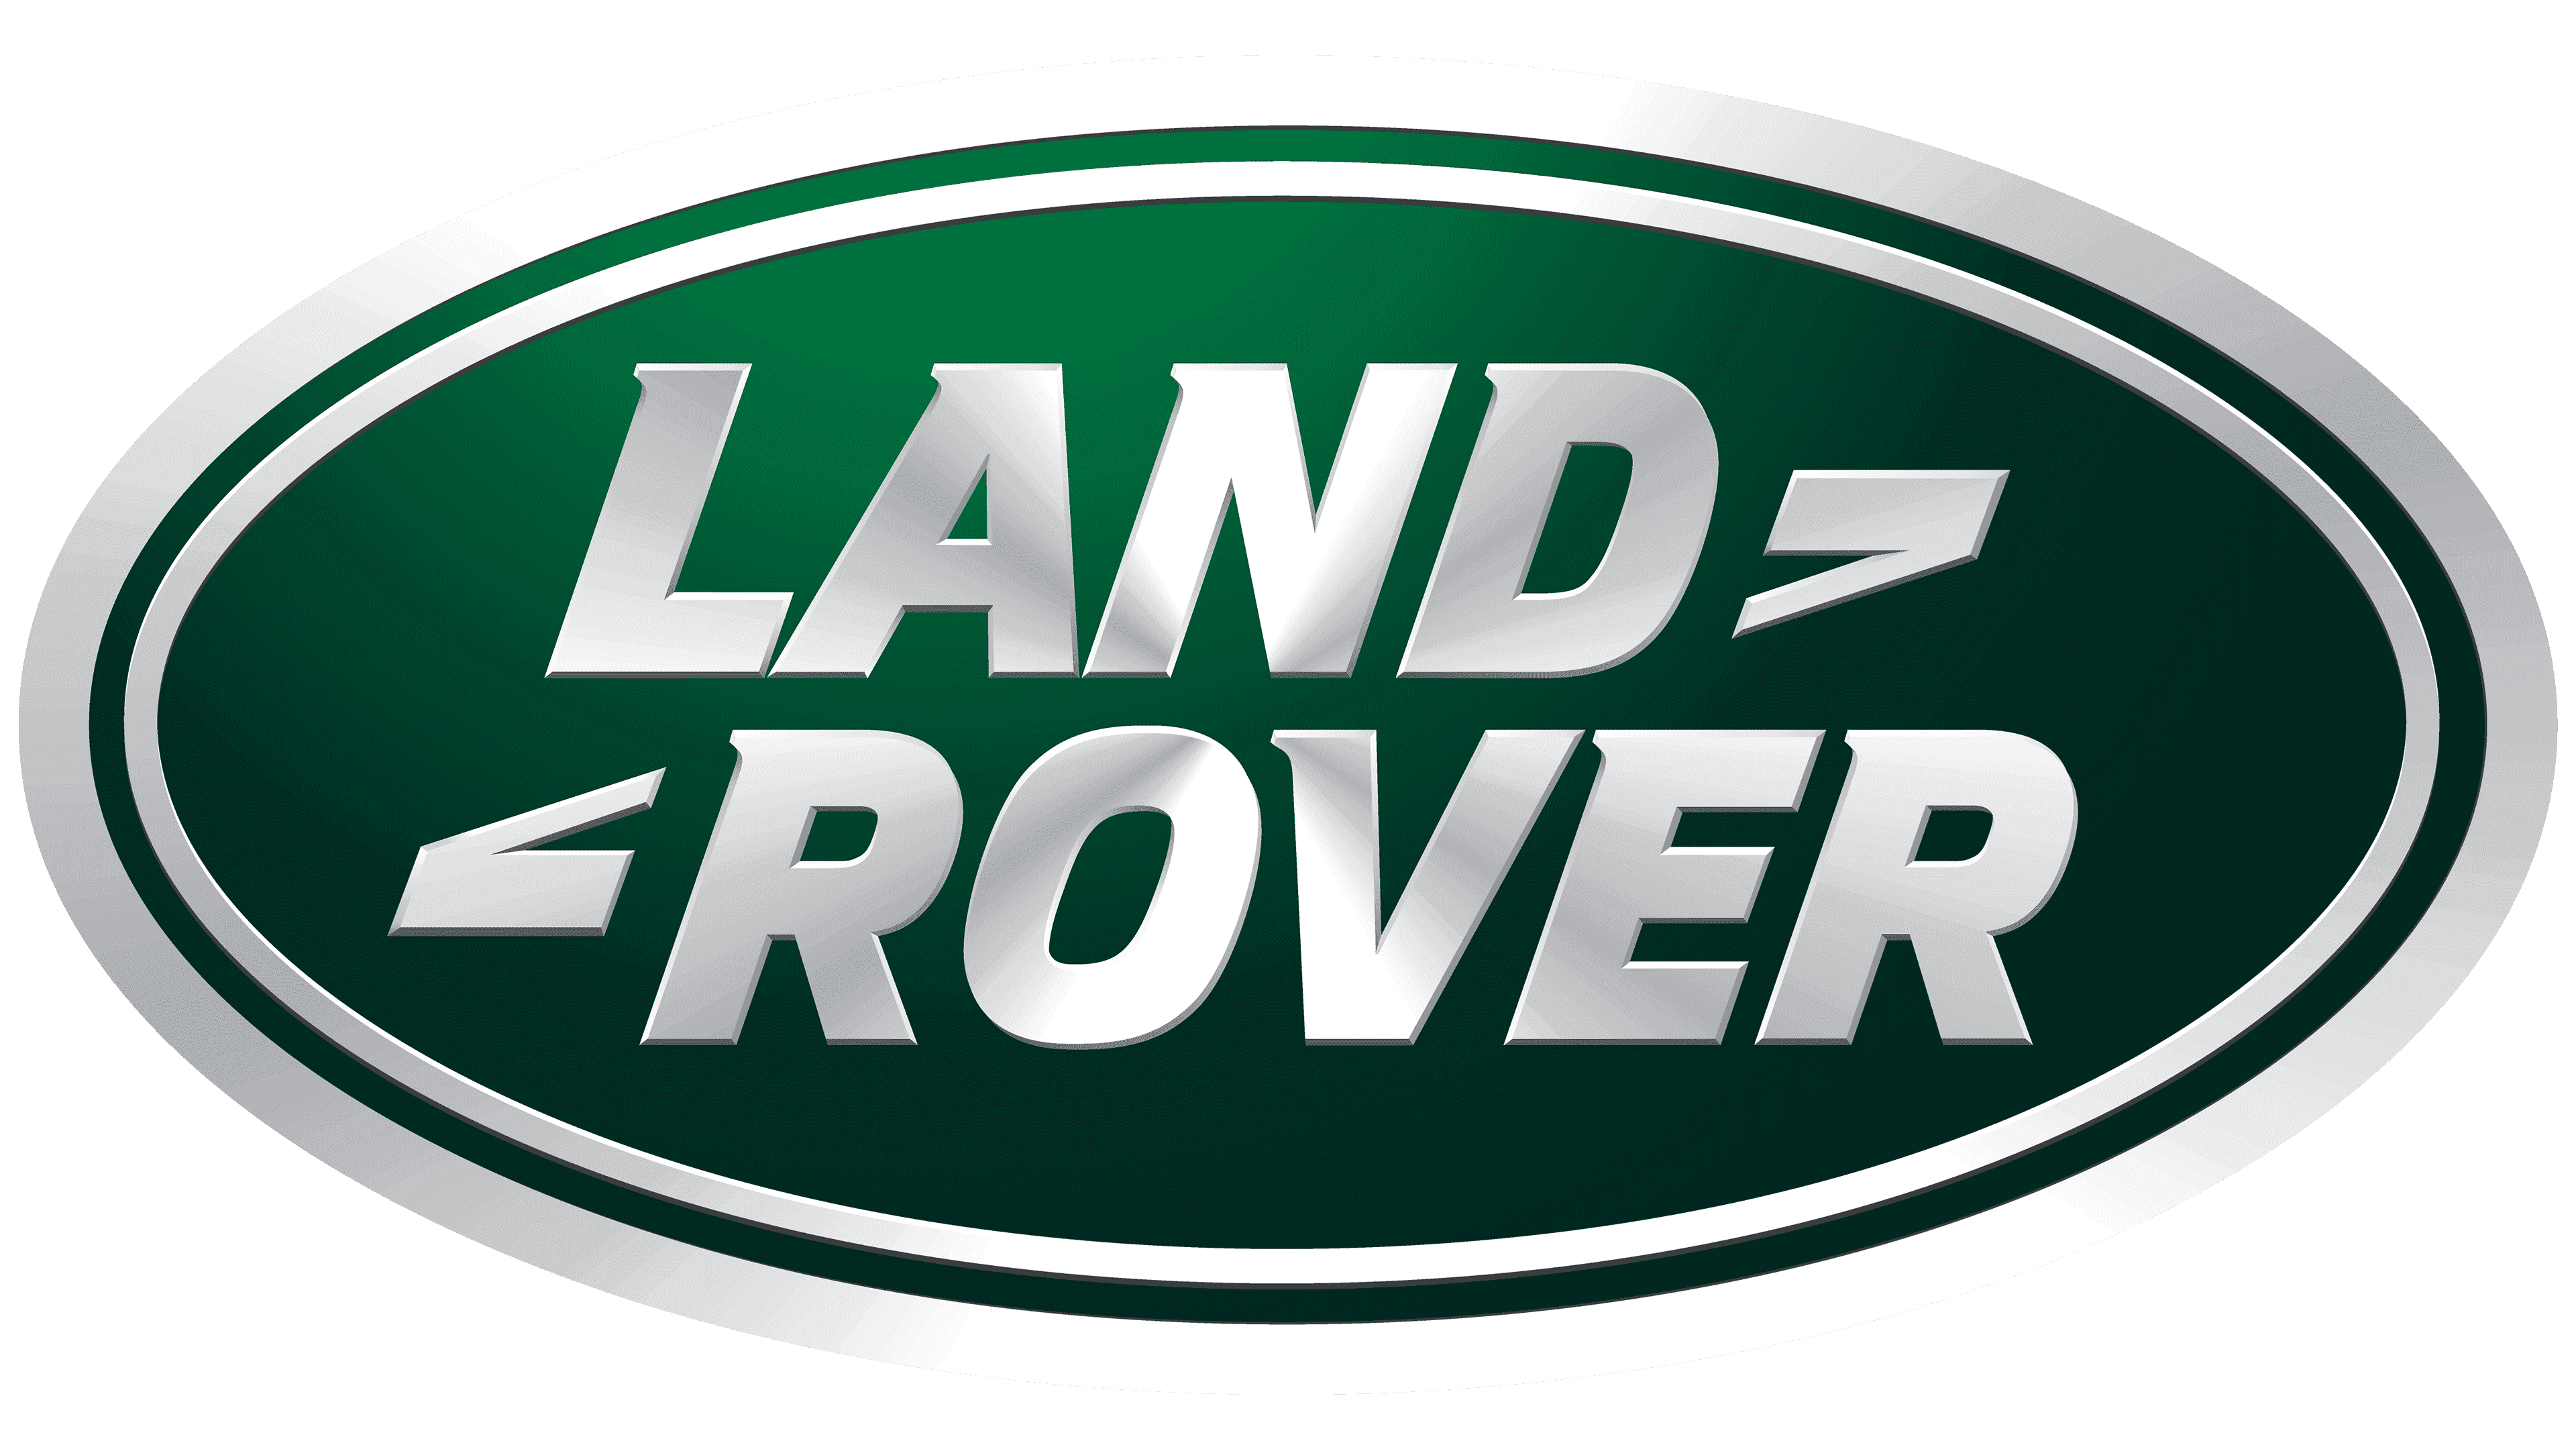 Thiết kế logo Range Rover range rover logo chuyên nghiệp và độc đáo